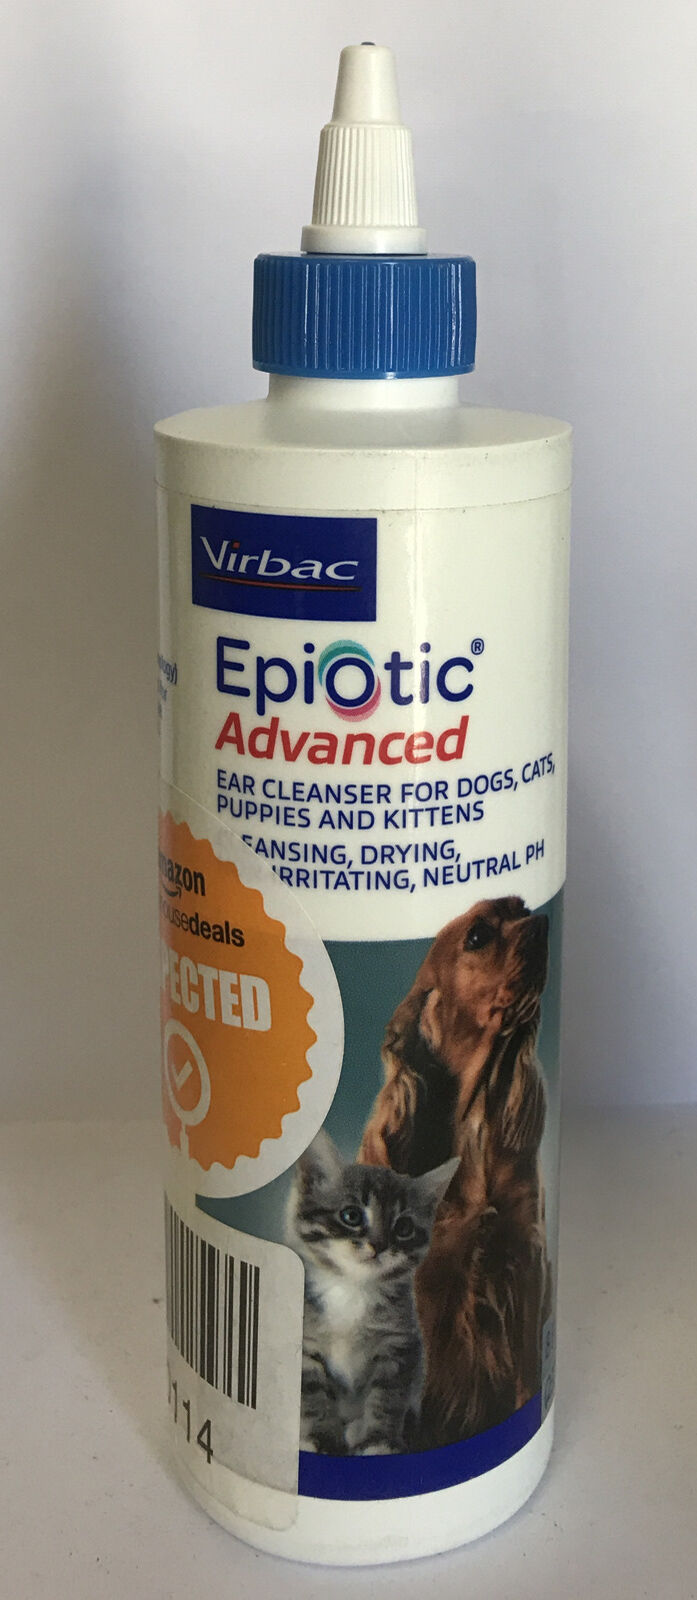 Virbac Epi-Otic Advanced Ear Cleaner 8 oz for Dogs, Cats, Kittens